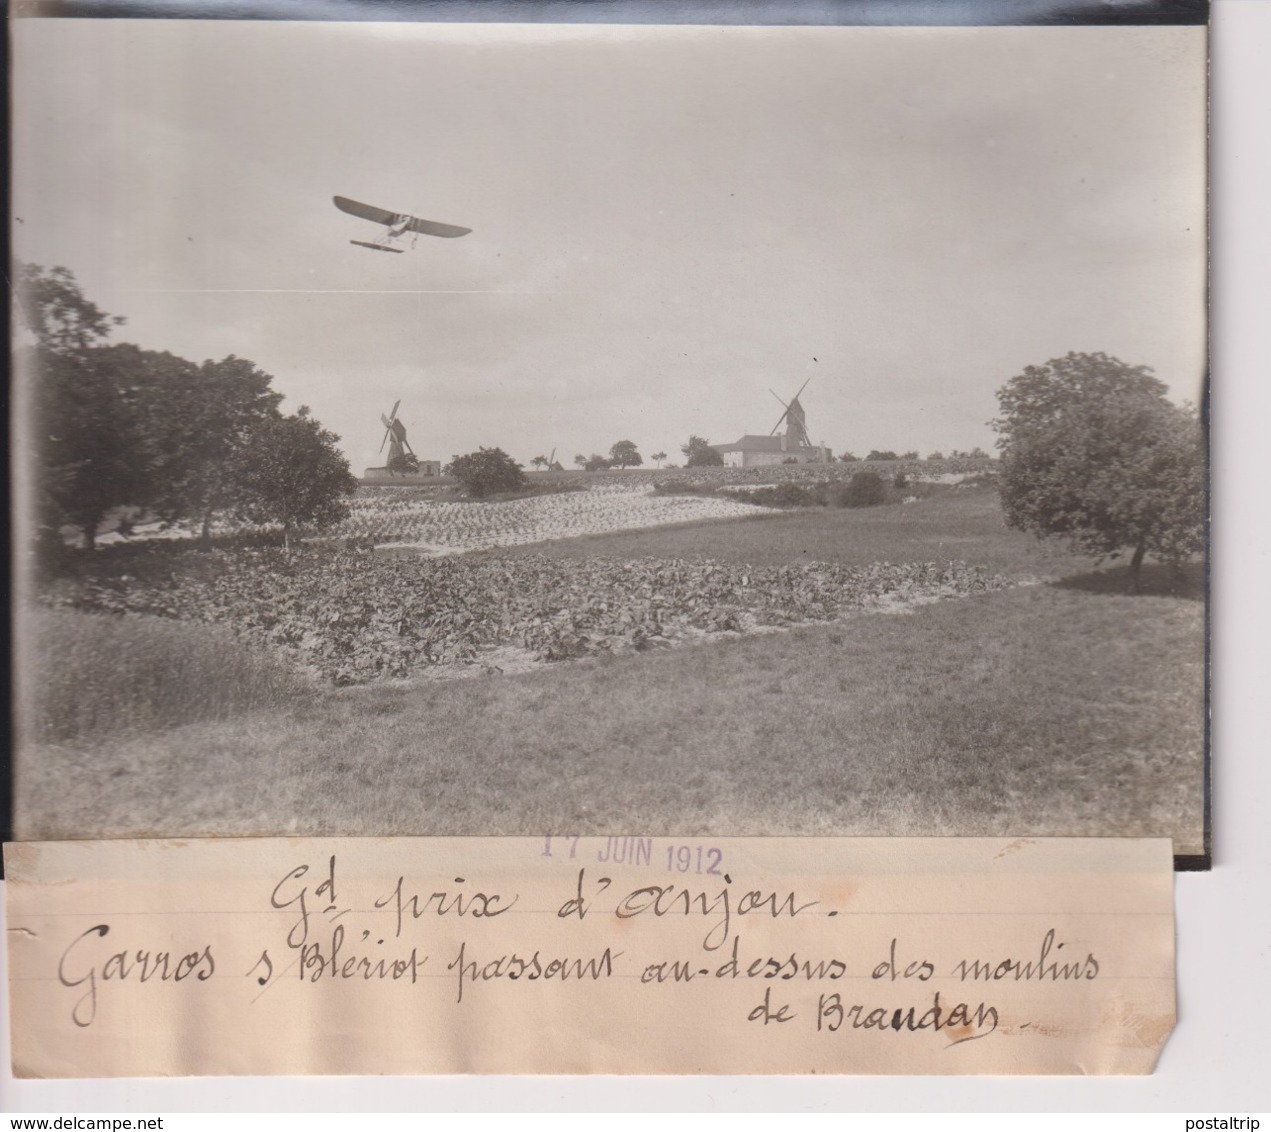 GRAND PRIX D'ANJOU GARROS S BLERIOT PASSANT DES MOULINS DE BRAUDAN  18*13CM Maurice-Louis BRANGER PARÍS (1874-1950) - Aviación